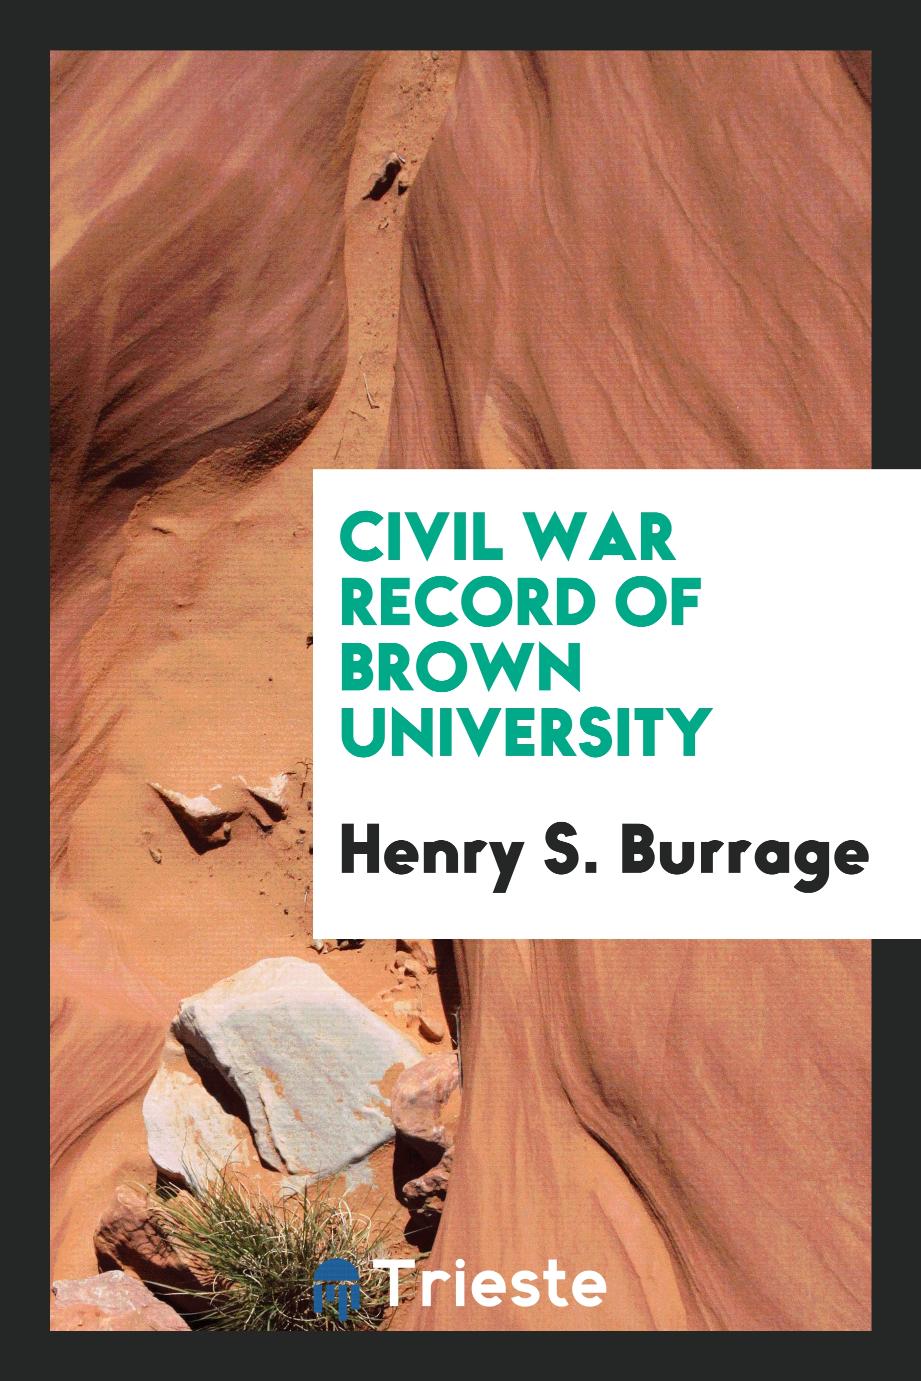 Civil war record of Brown University